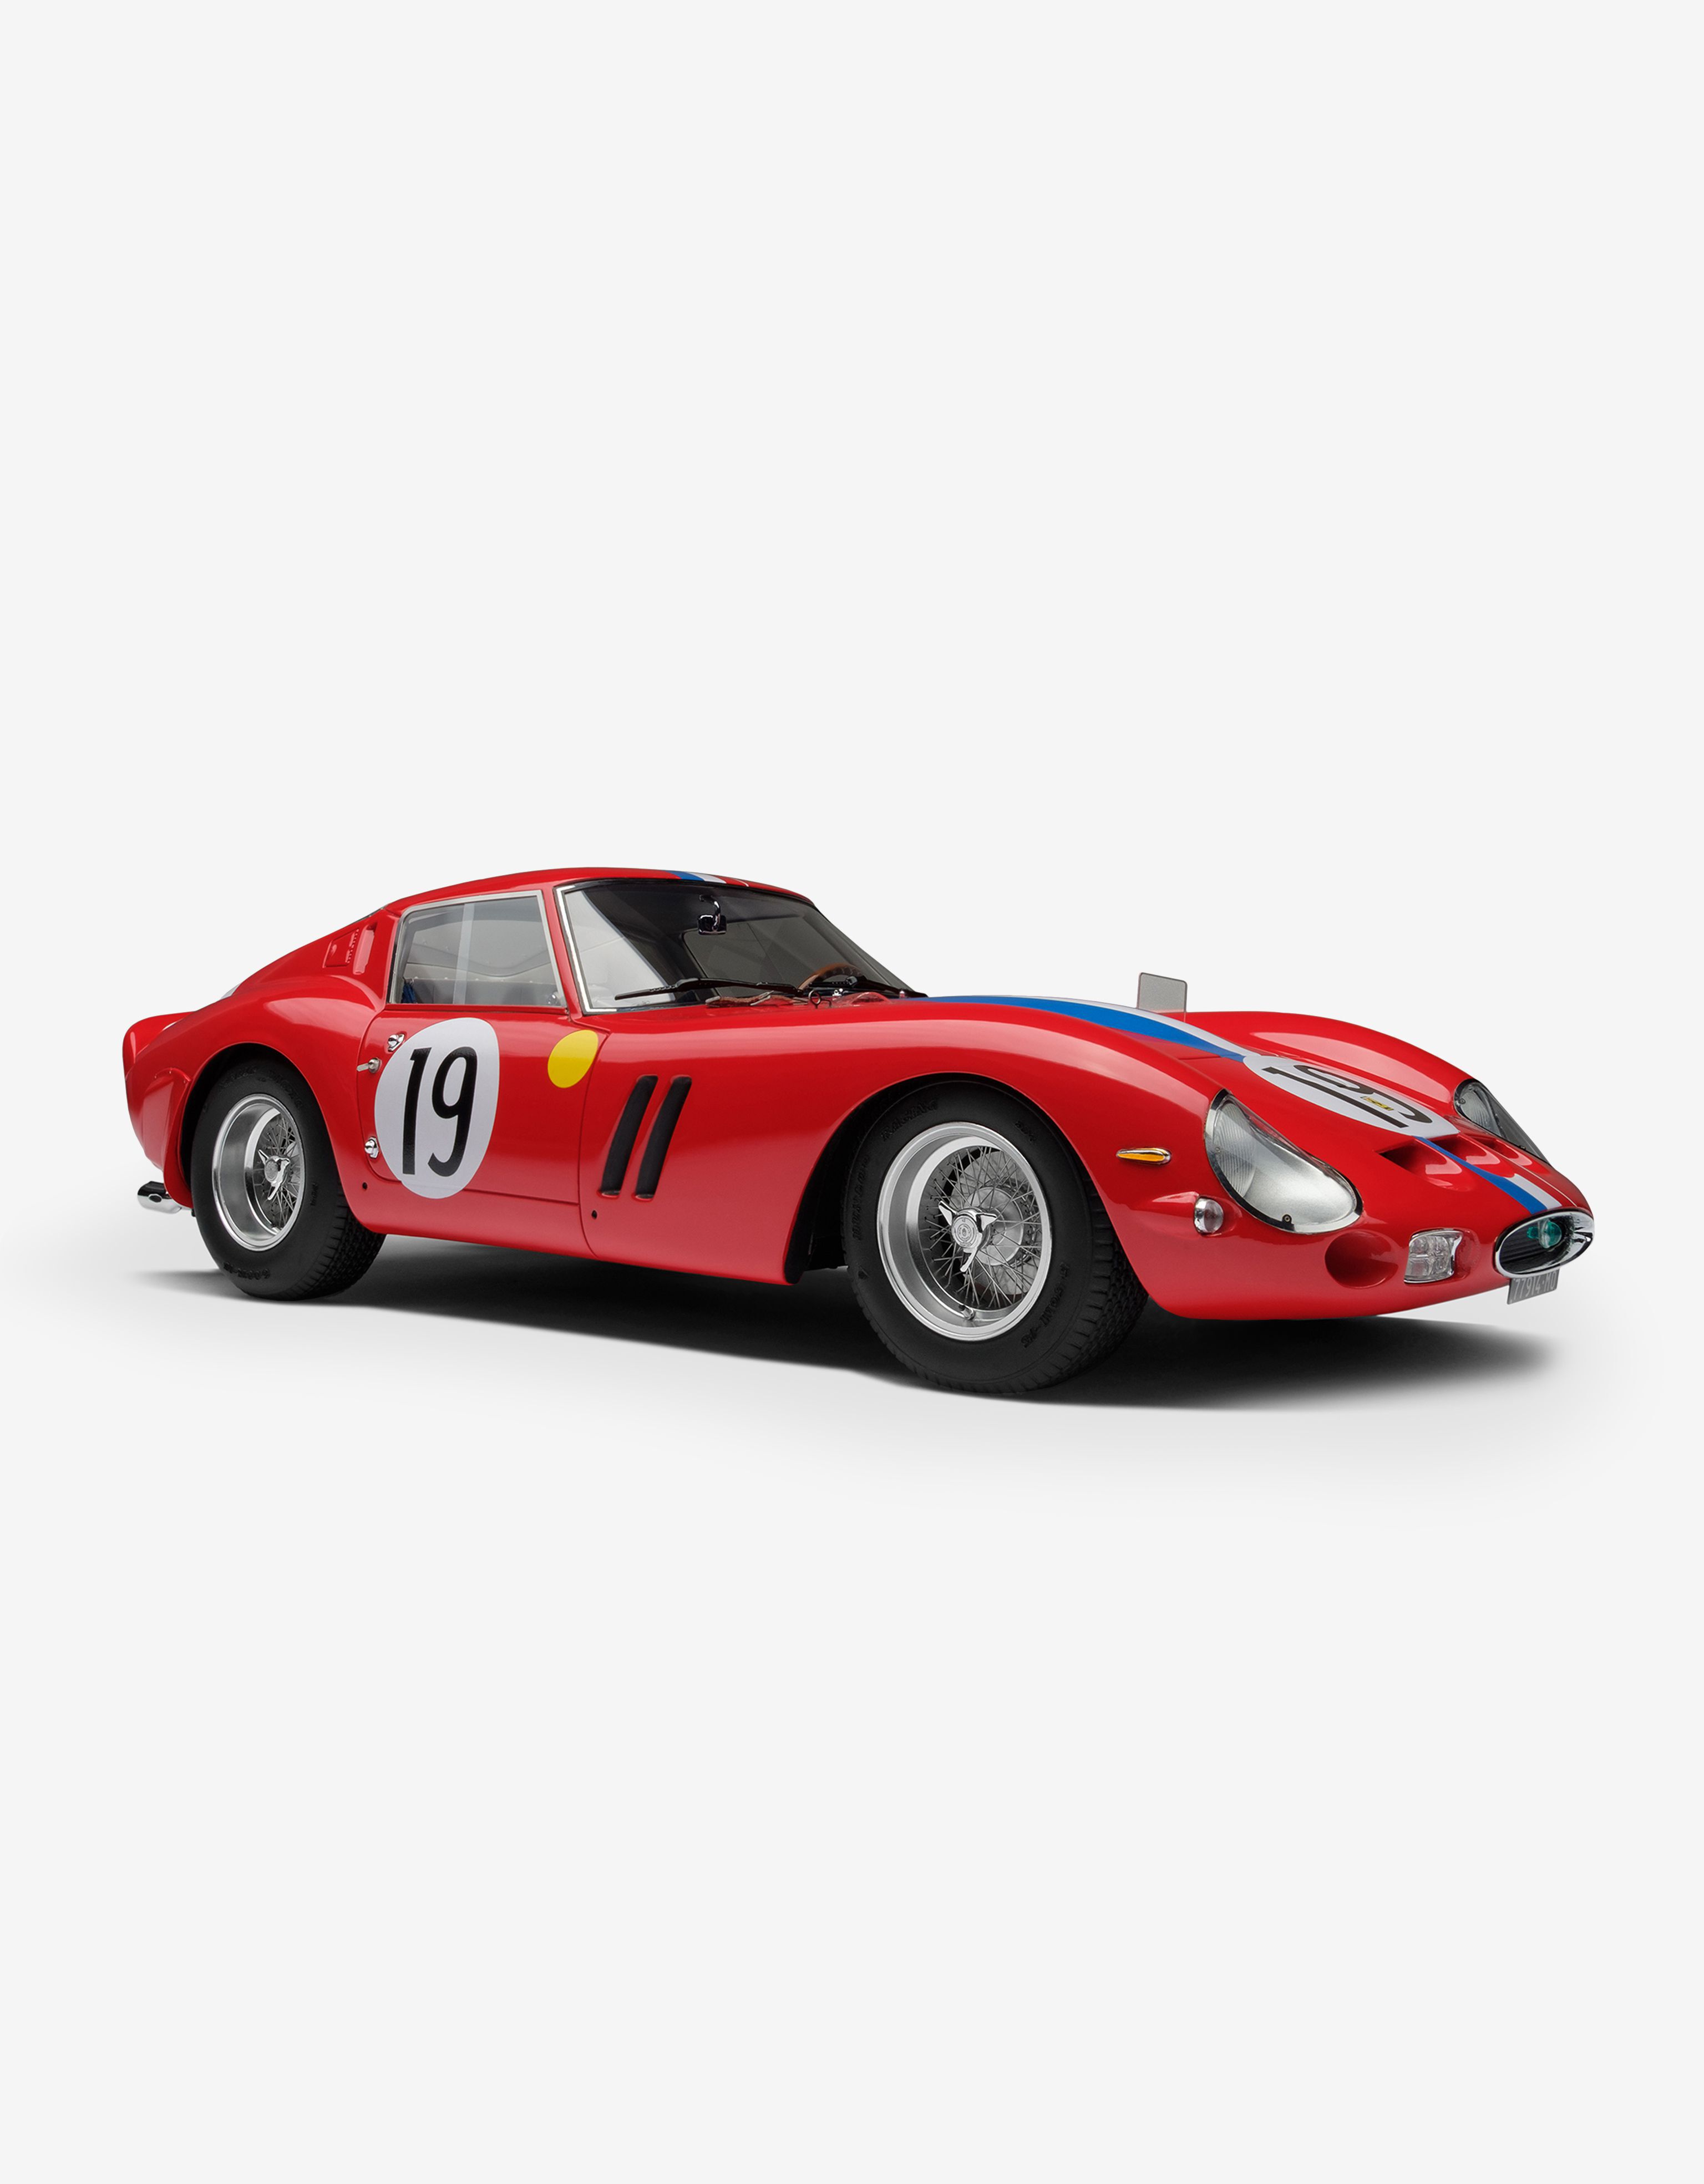 Ferrari Ferrari 250 GTO 1962 Le Mans model in 1:18 scale Red F1348f